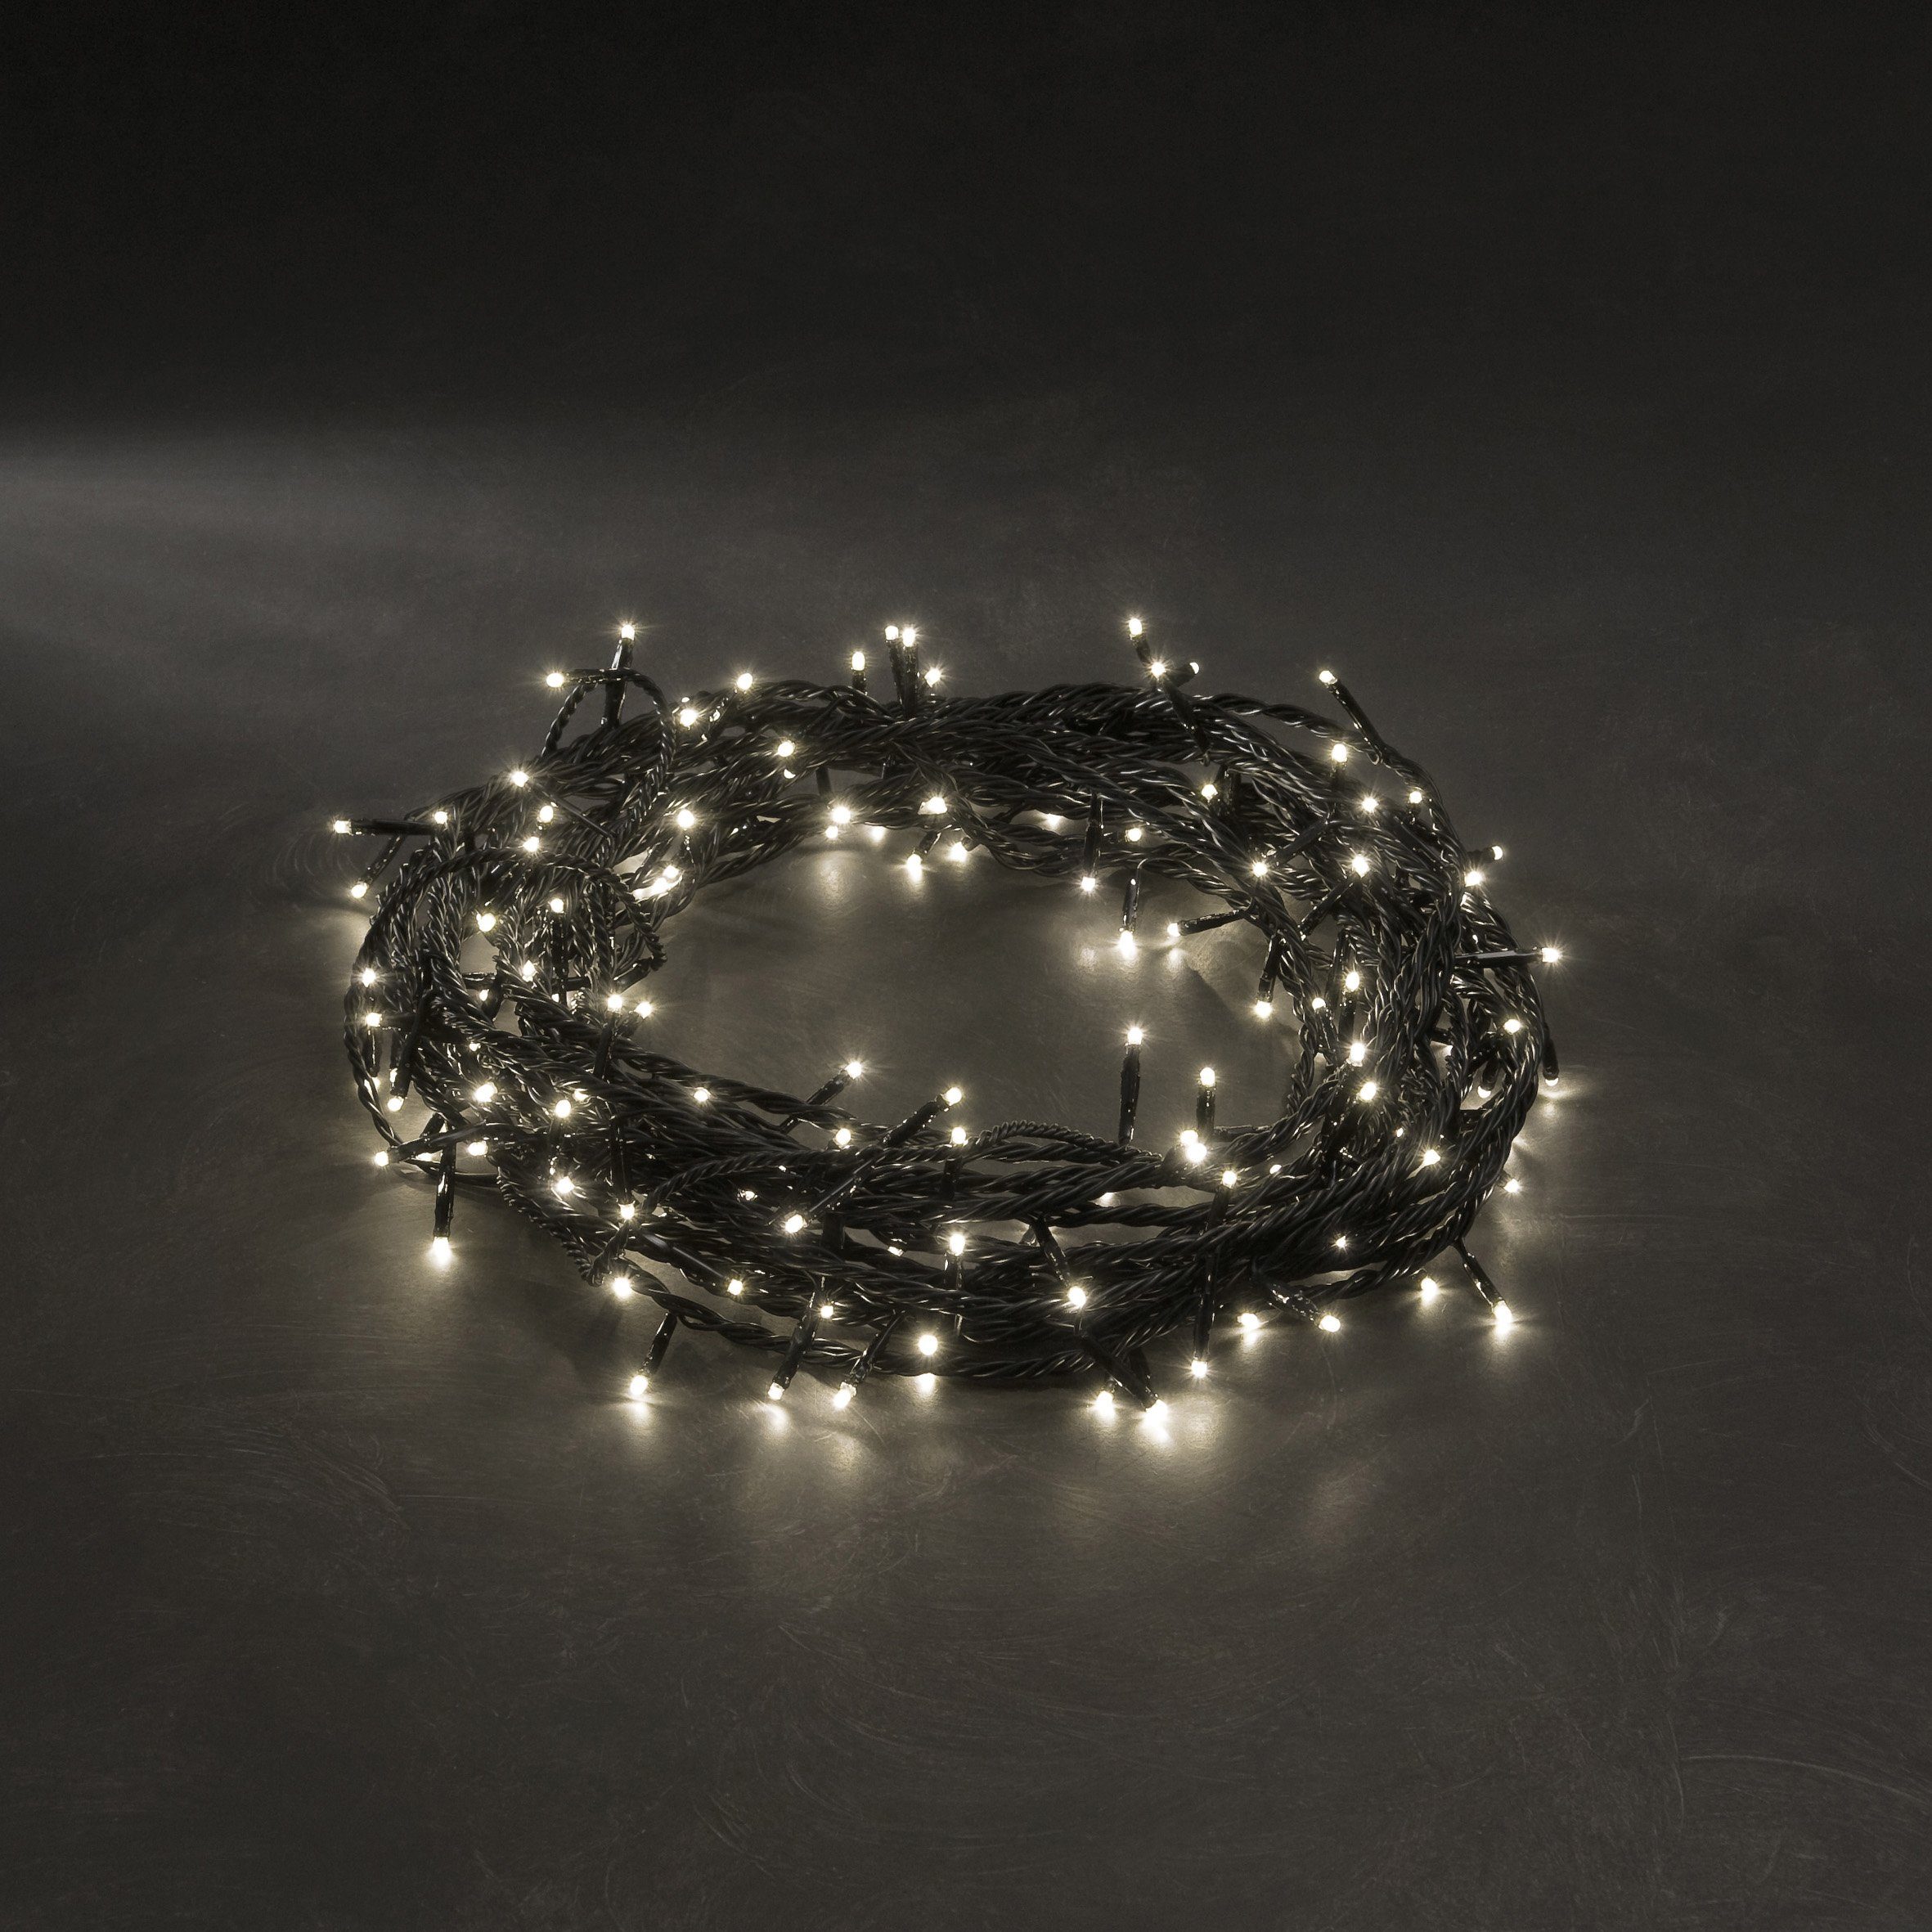 KONSTSMIDE LED-Lichterkette Weihnachtsdeko aussen, 180-flammig, Micro LED  Lichterkette, mit 8 Funktionen, 180 warm weiße Dioden